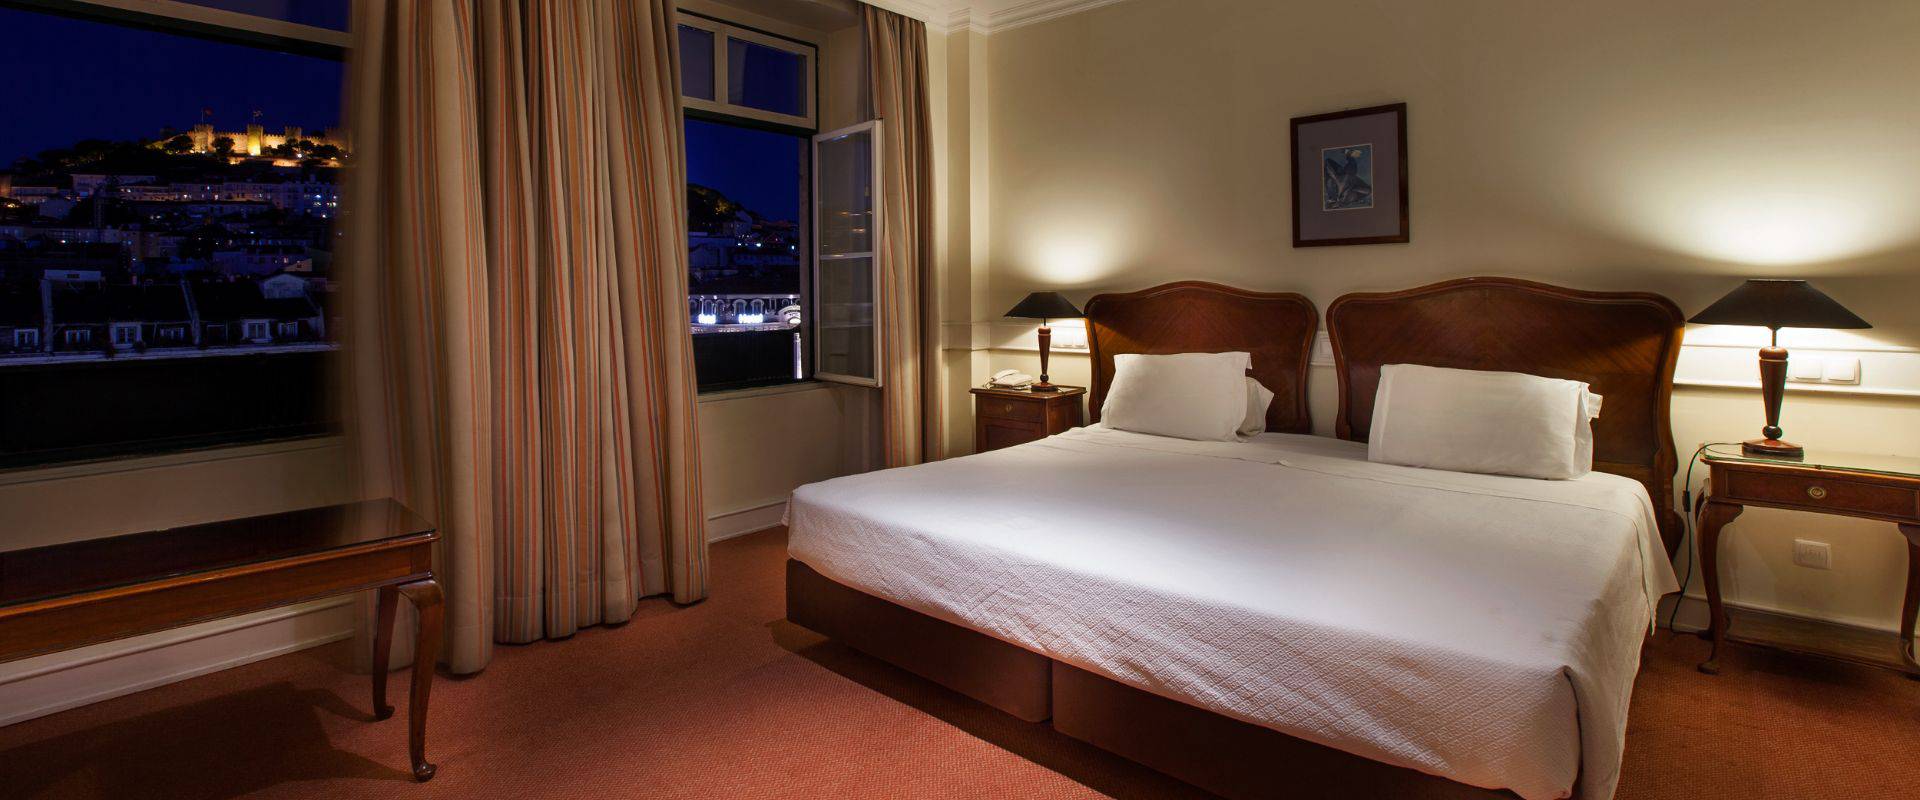 Quarto rossio com cama extra  Métropole Hotel Lisboa